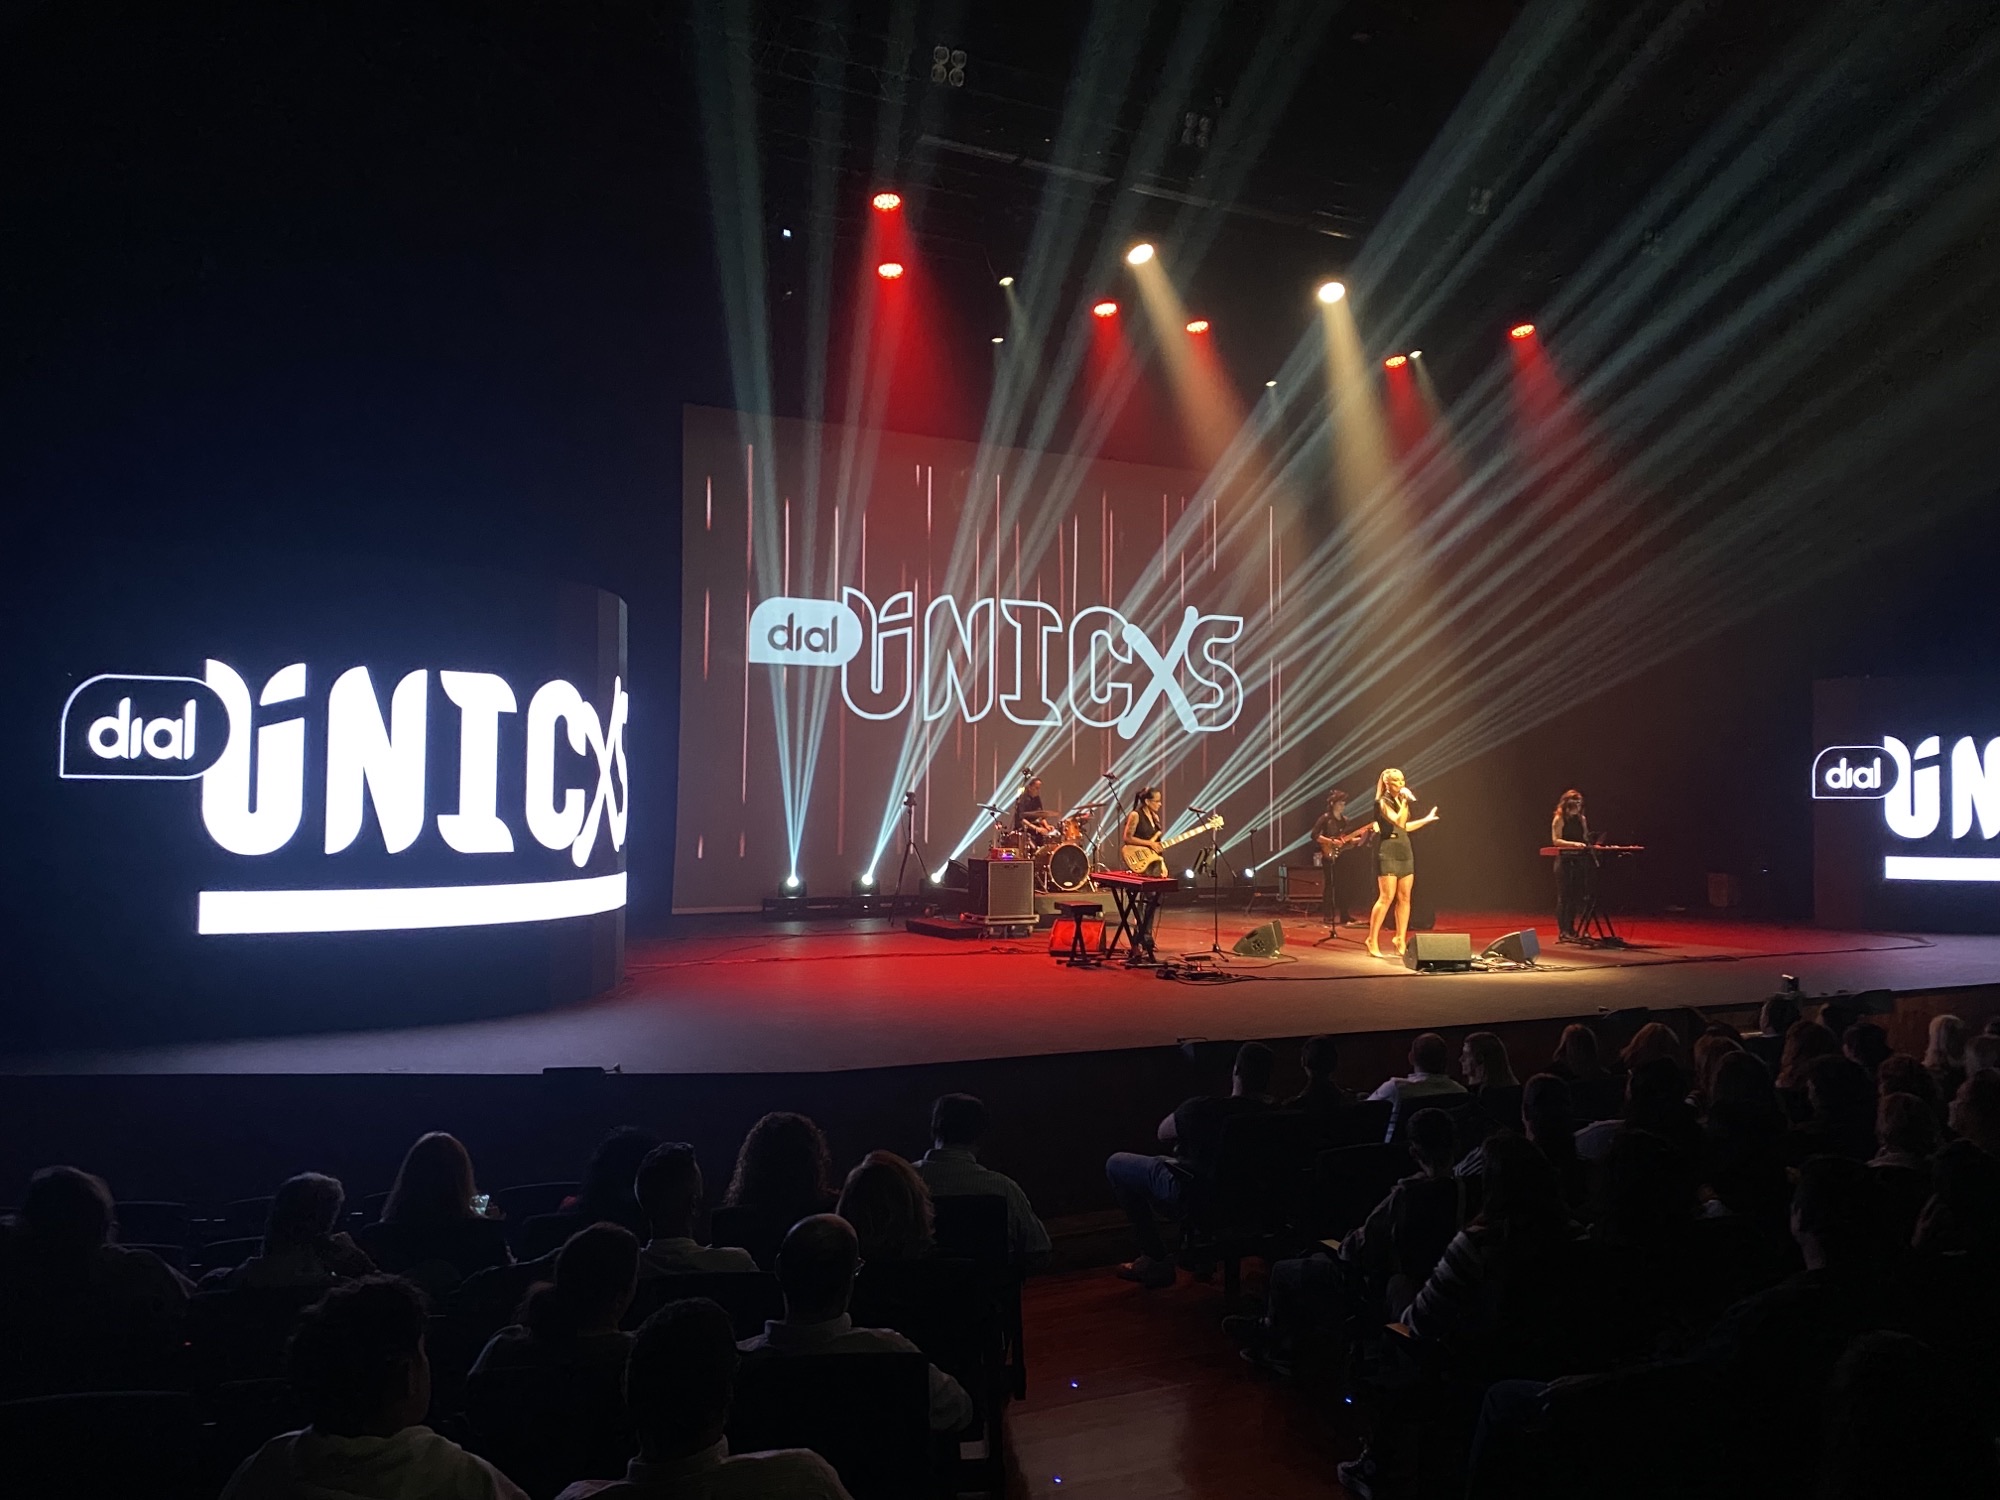 El de Murcia y Cadena Dial la Navidad con ÚNICXS el Teatro - Cadena Dial